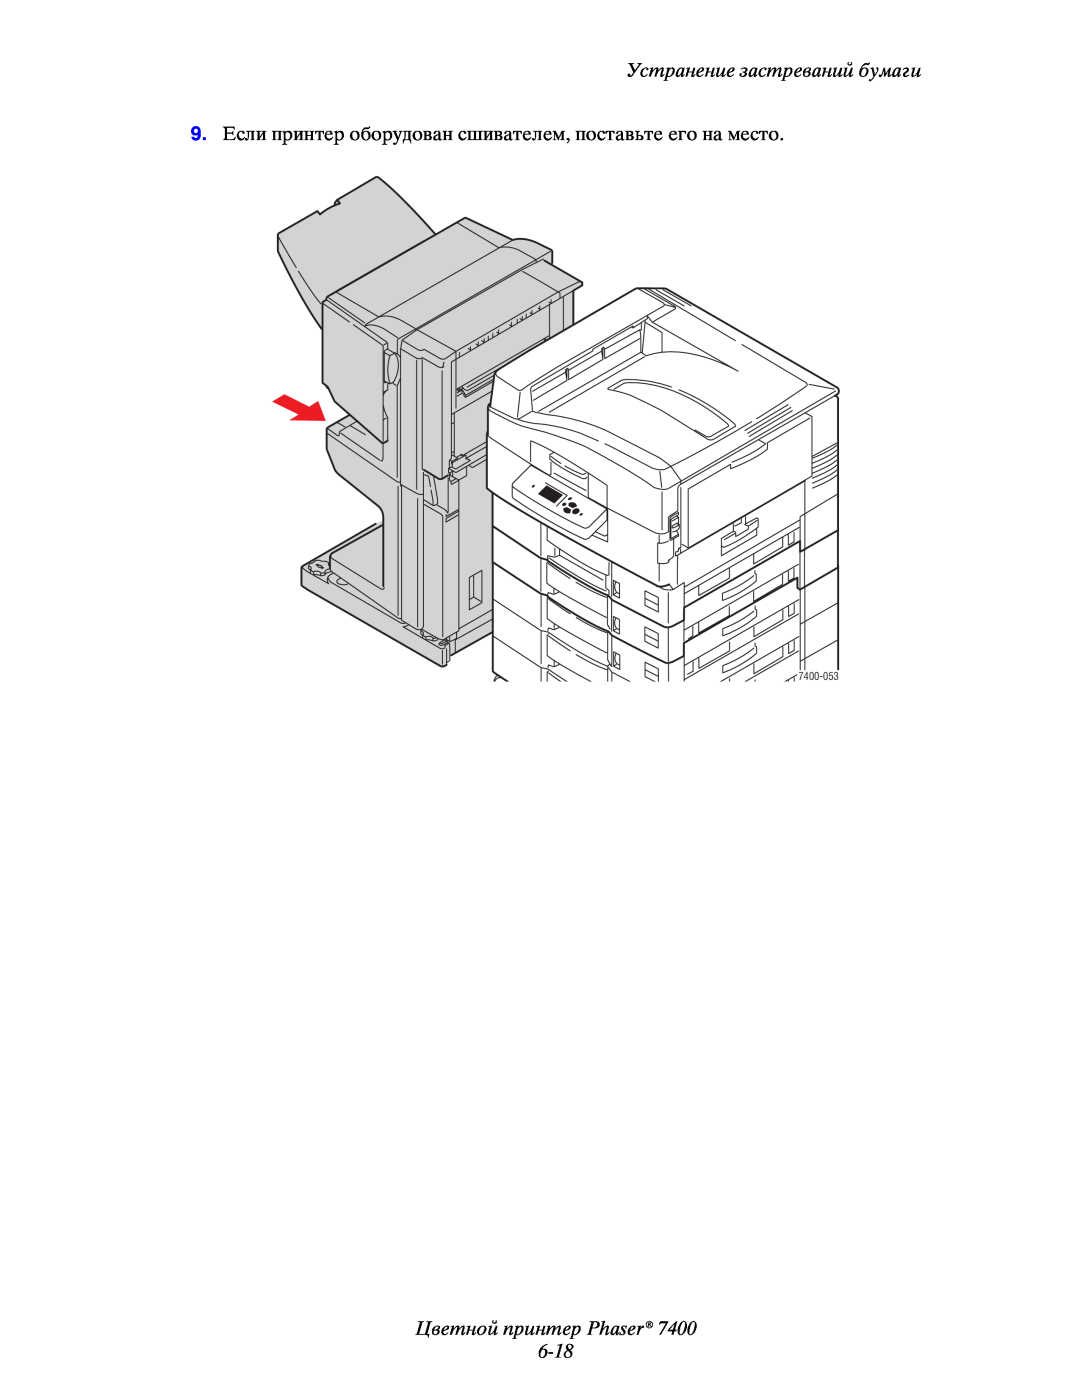 Xerox manual Цветной принтер Phaser 6-18, Устранение застреваний бумаги, 7400-053 